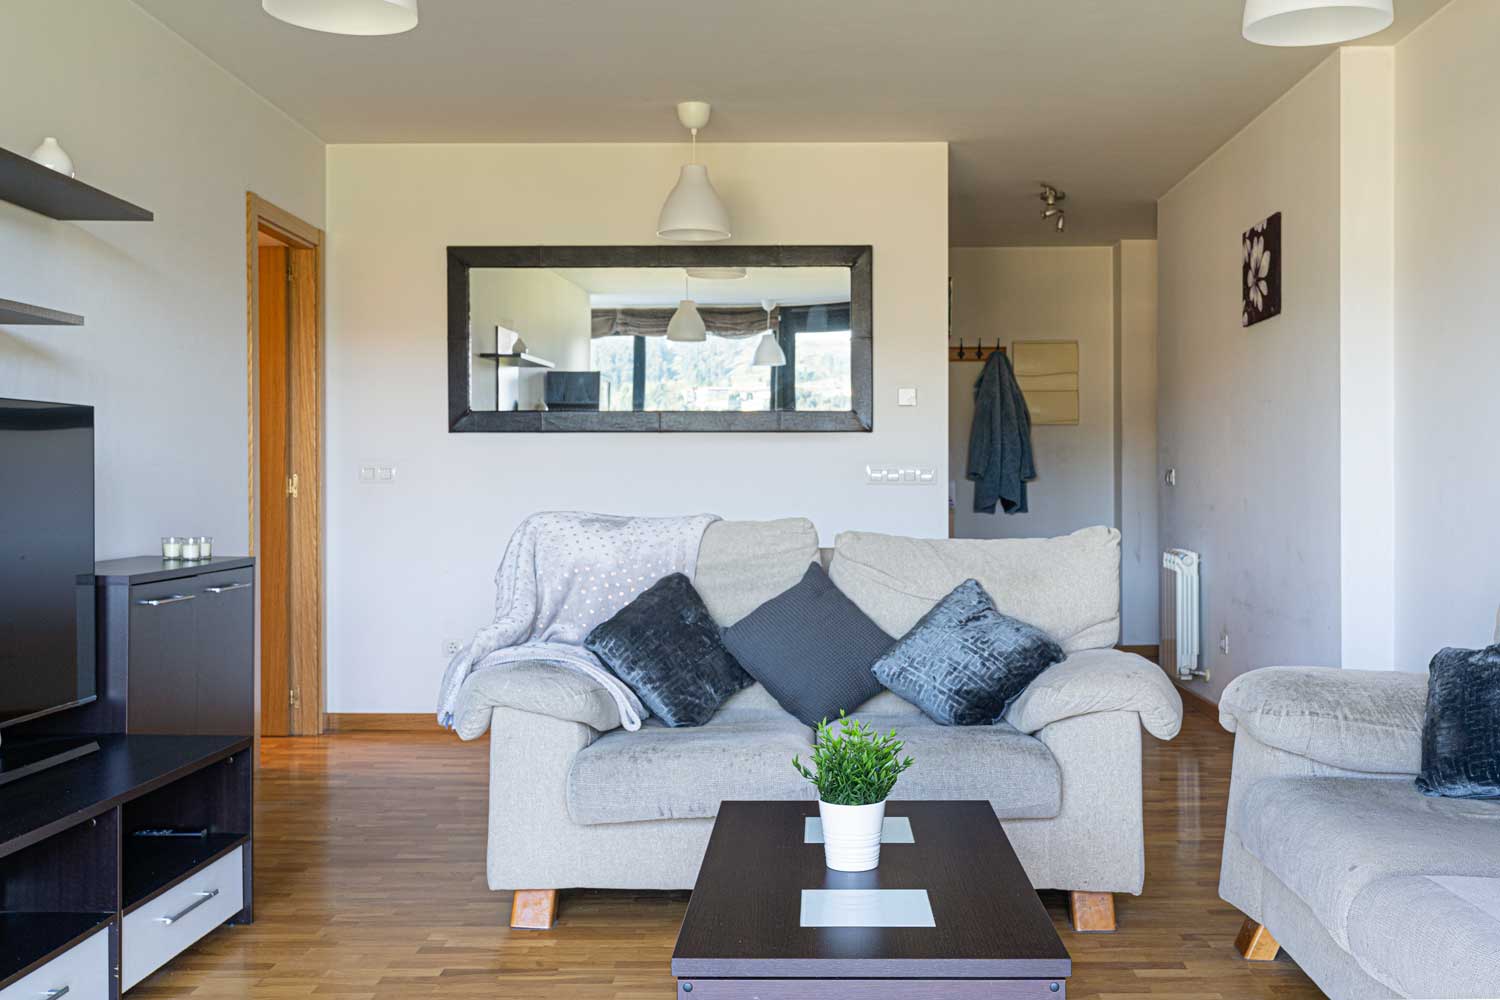 Salón preparado con Home Staging_ sofás beige y muebles oscuros_se aprecia la distribución de la vivienda